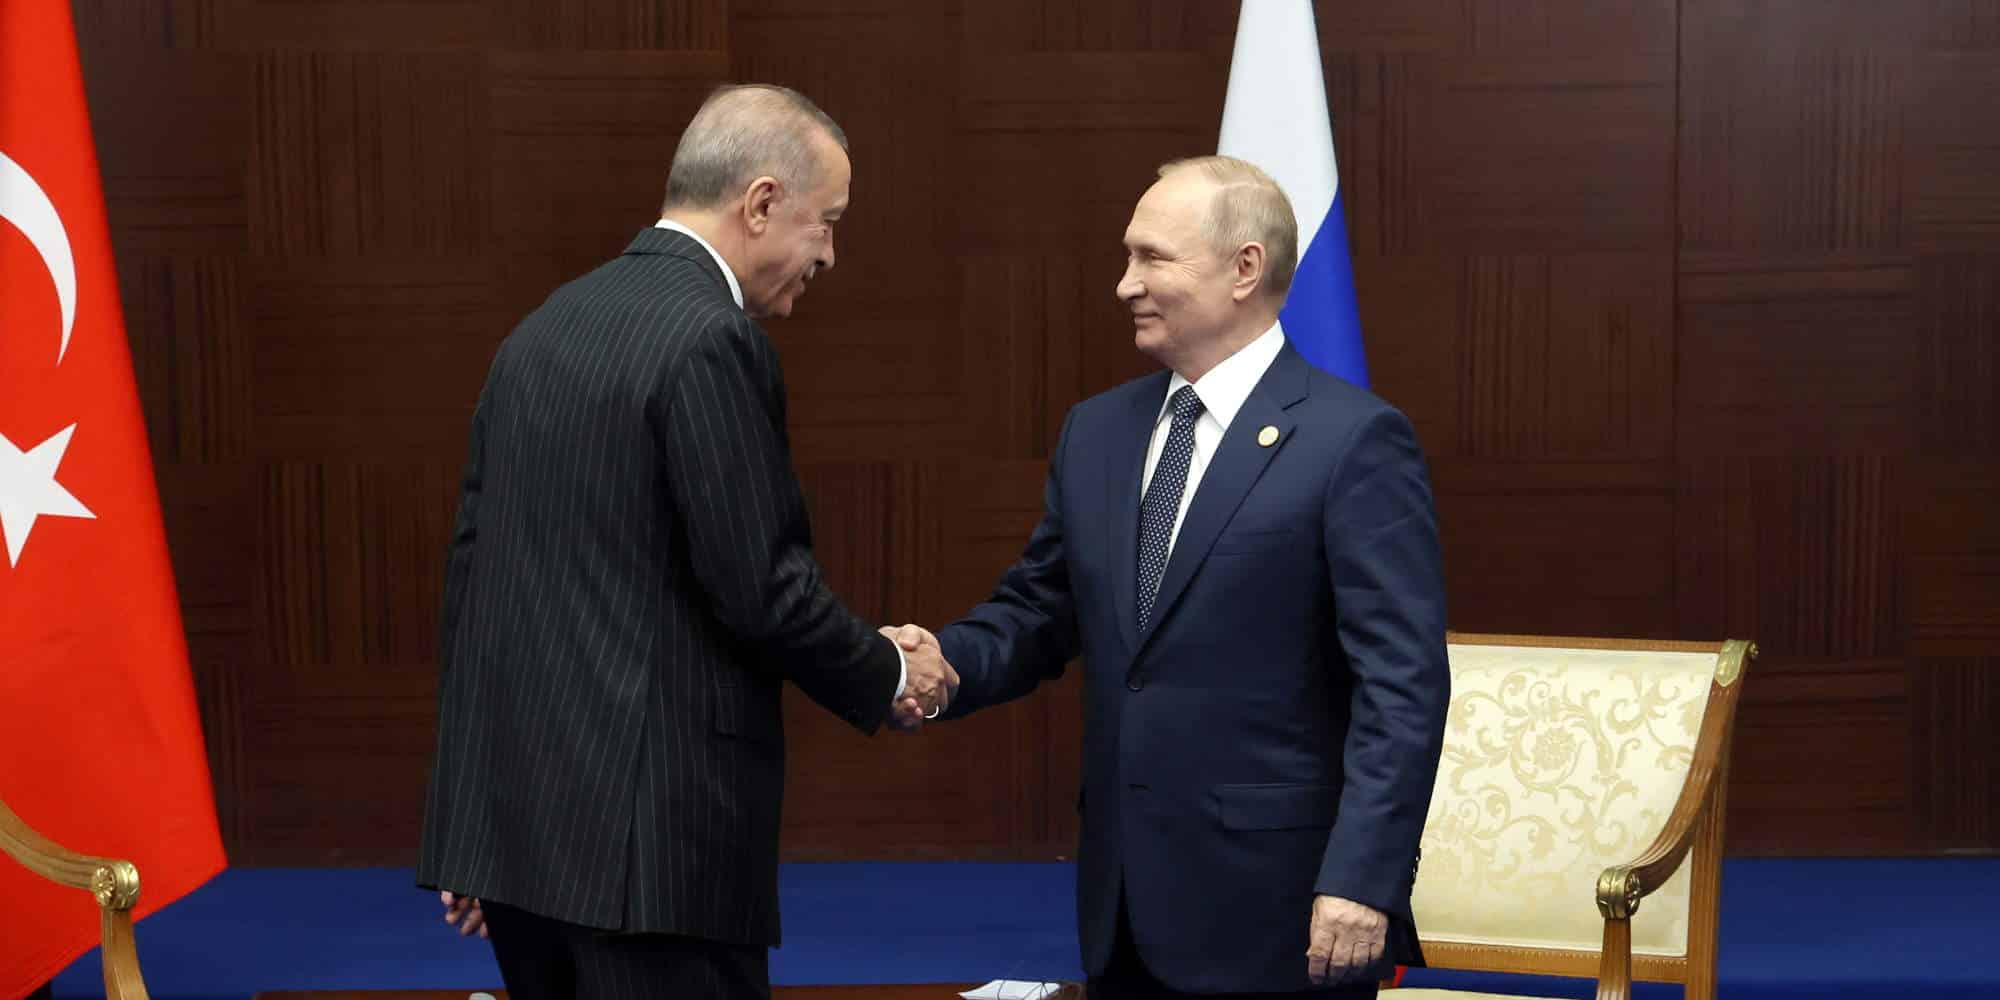 Ο Τούρκος πρόεδρος Ρετζέπ Ταγίπ Ερντογάν σε χειραψία με τον Ρώσο ομόλογό του, Βλαντιμίρ Πούτιν